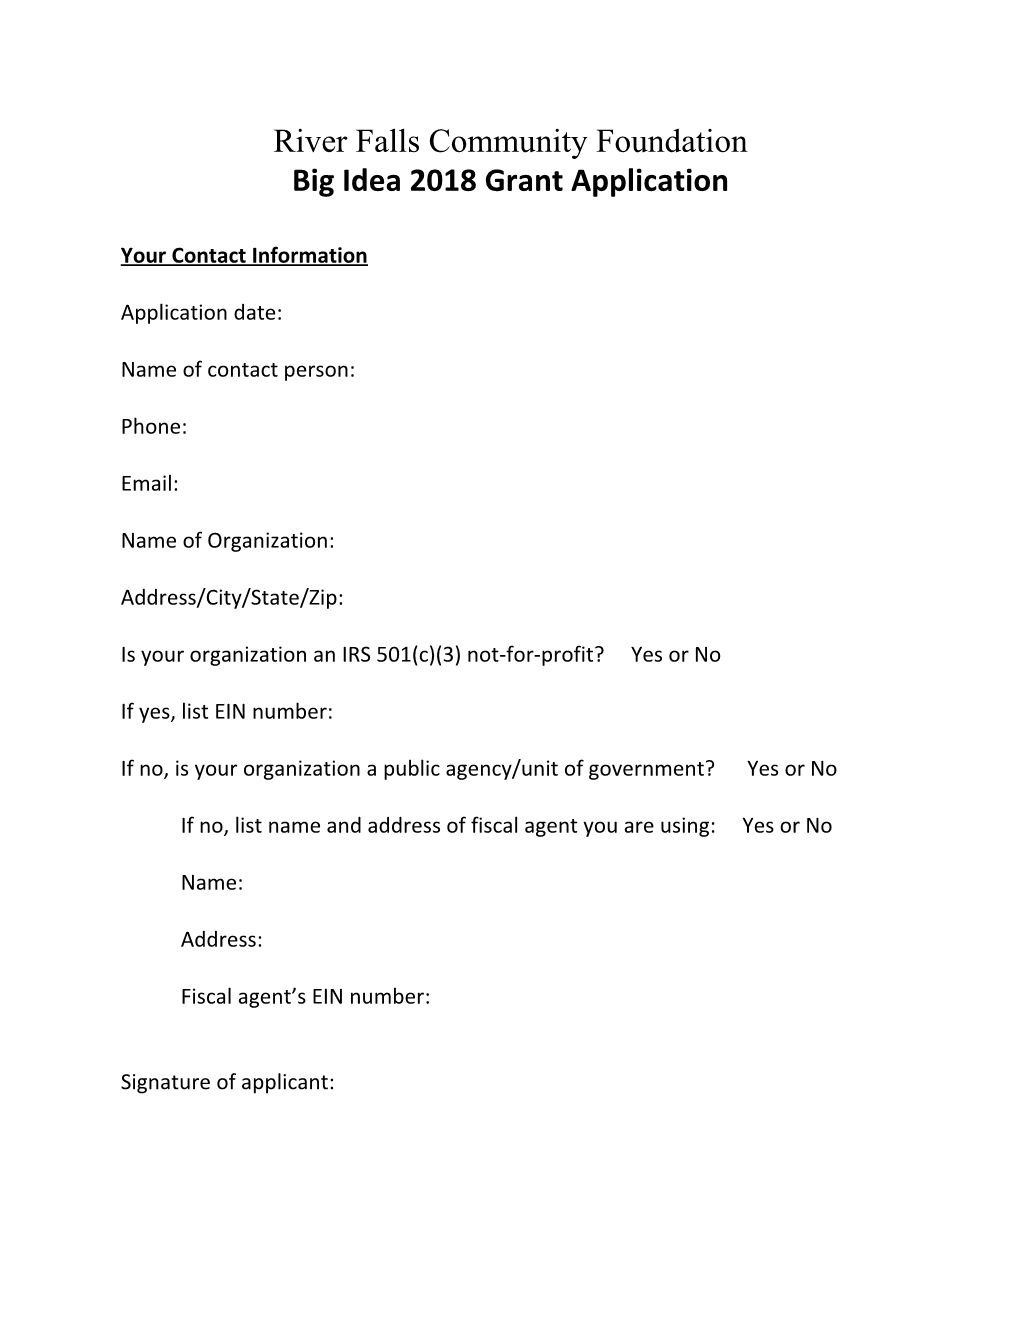 Big Idea 2018 Grant Application